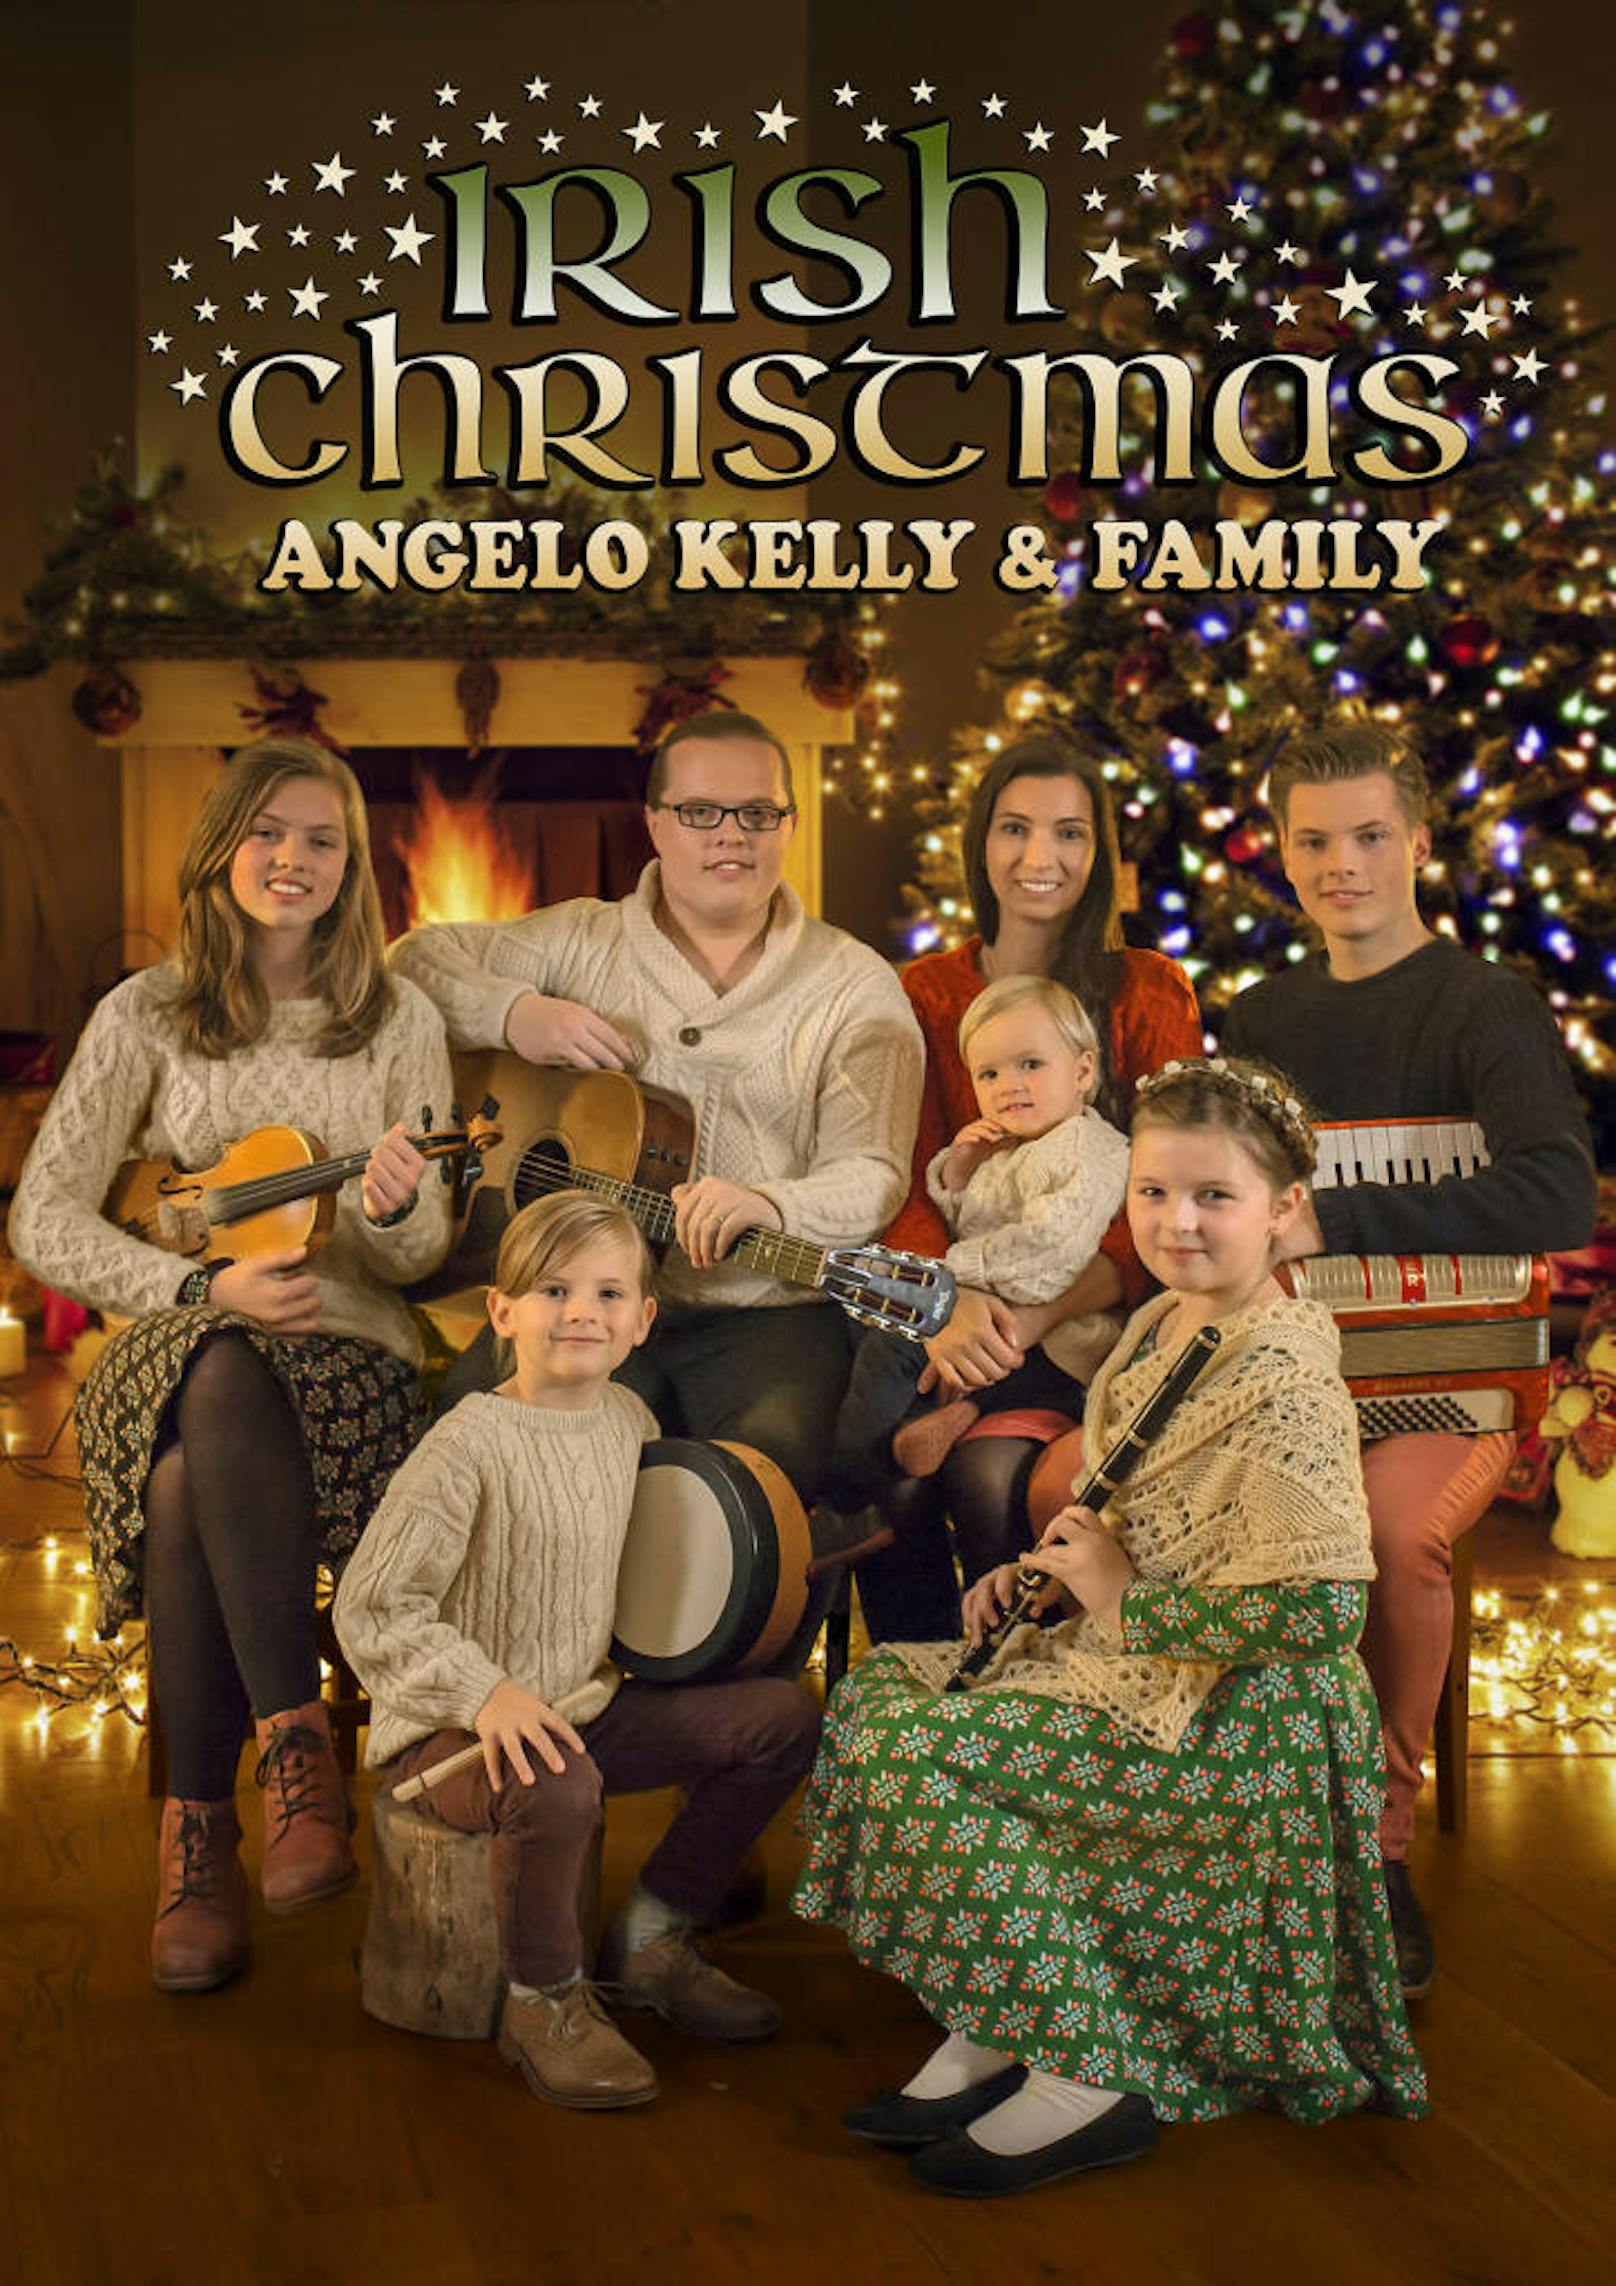 Angelo Kelly & Family "Irish Christmas Tour"